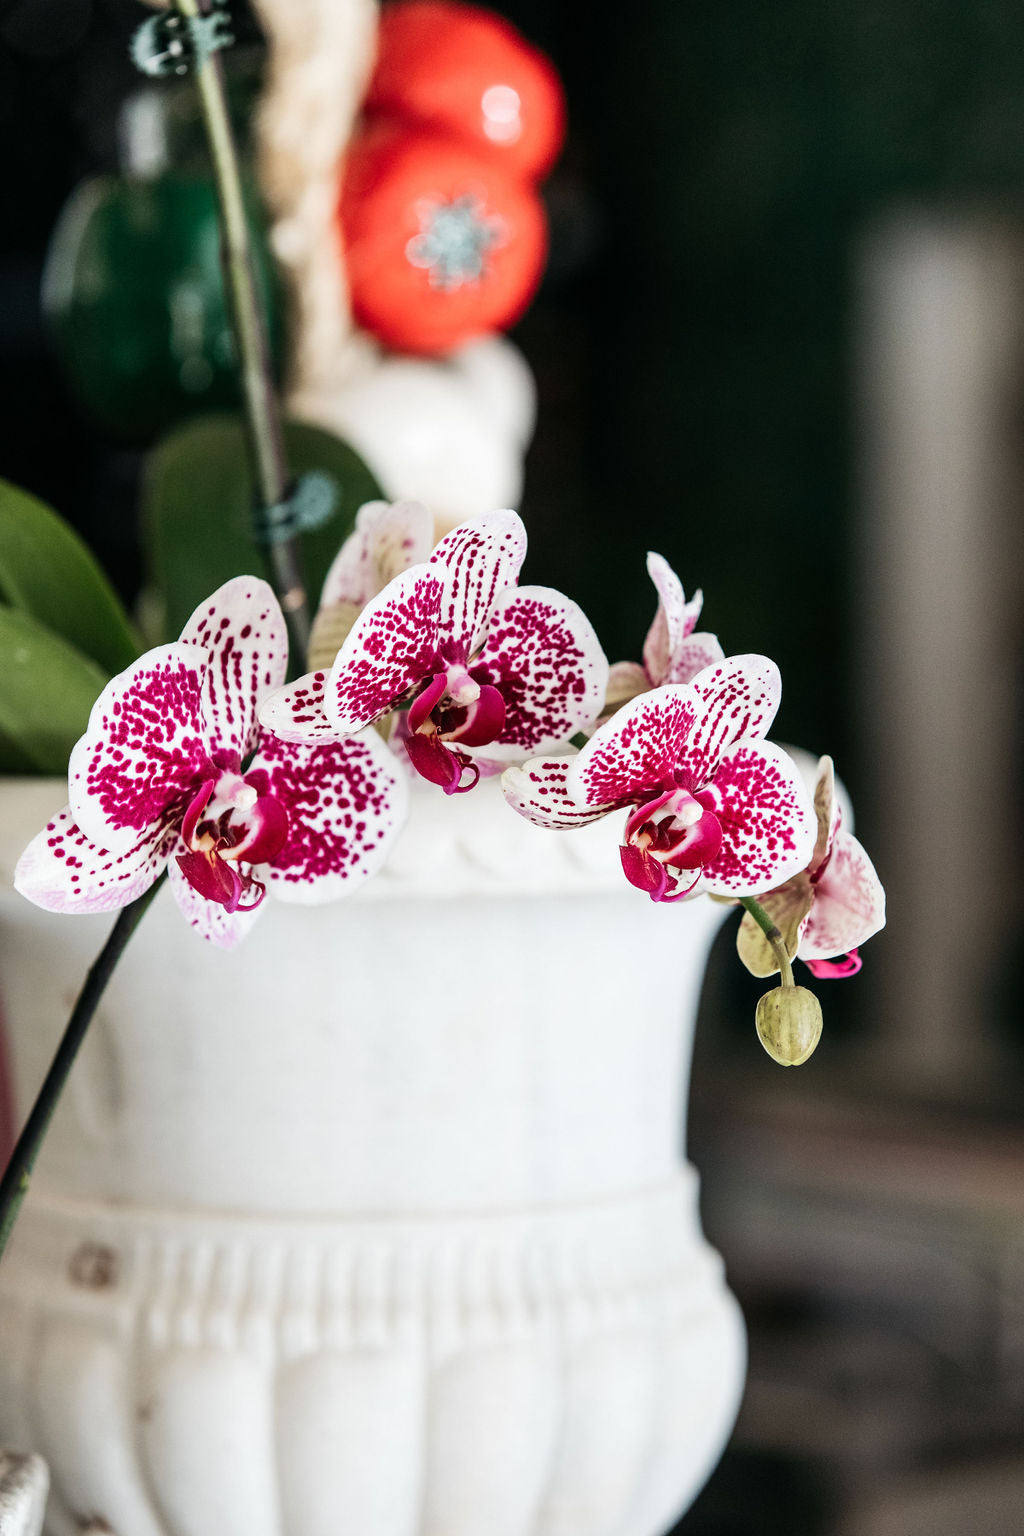 Orchid ( Phalaenopsis )